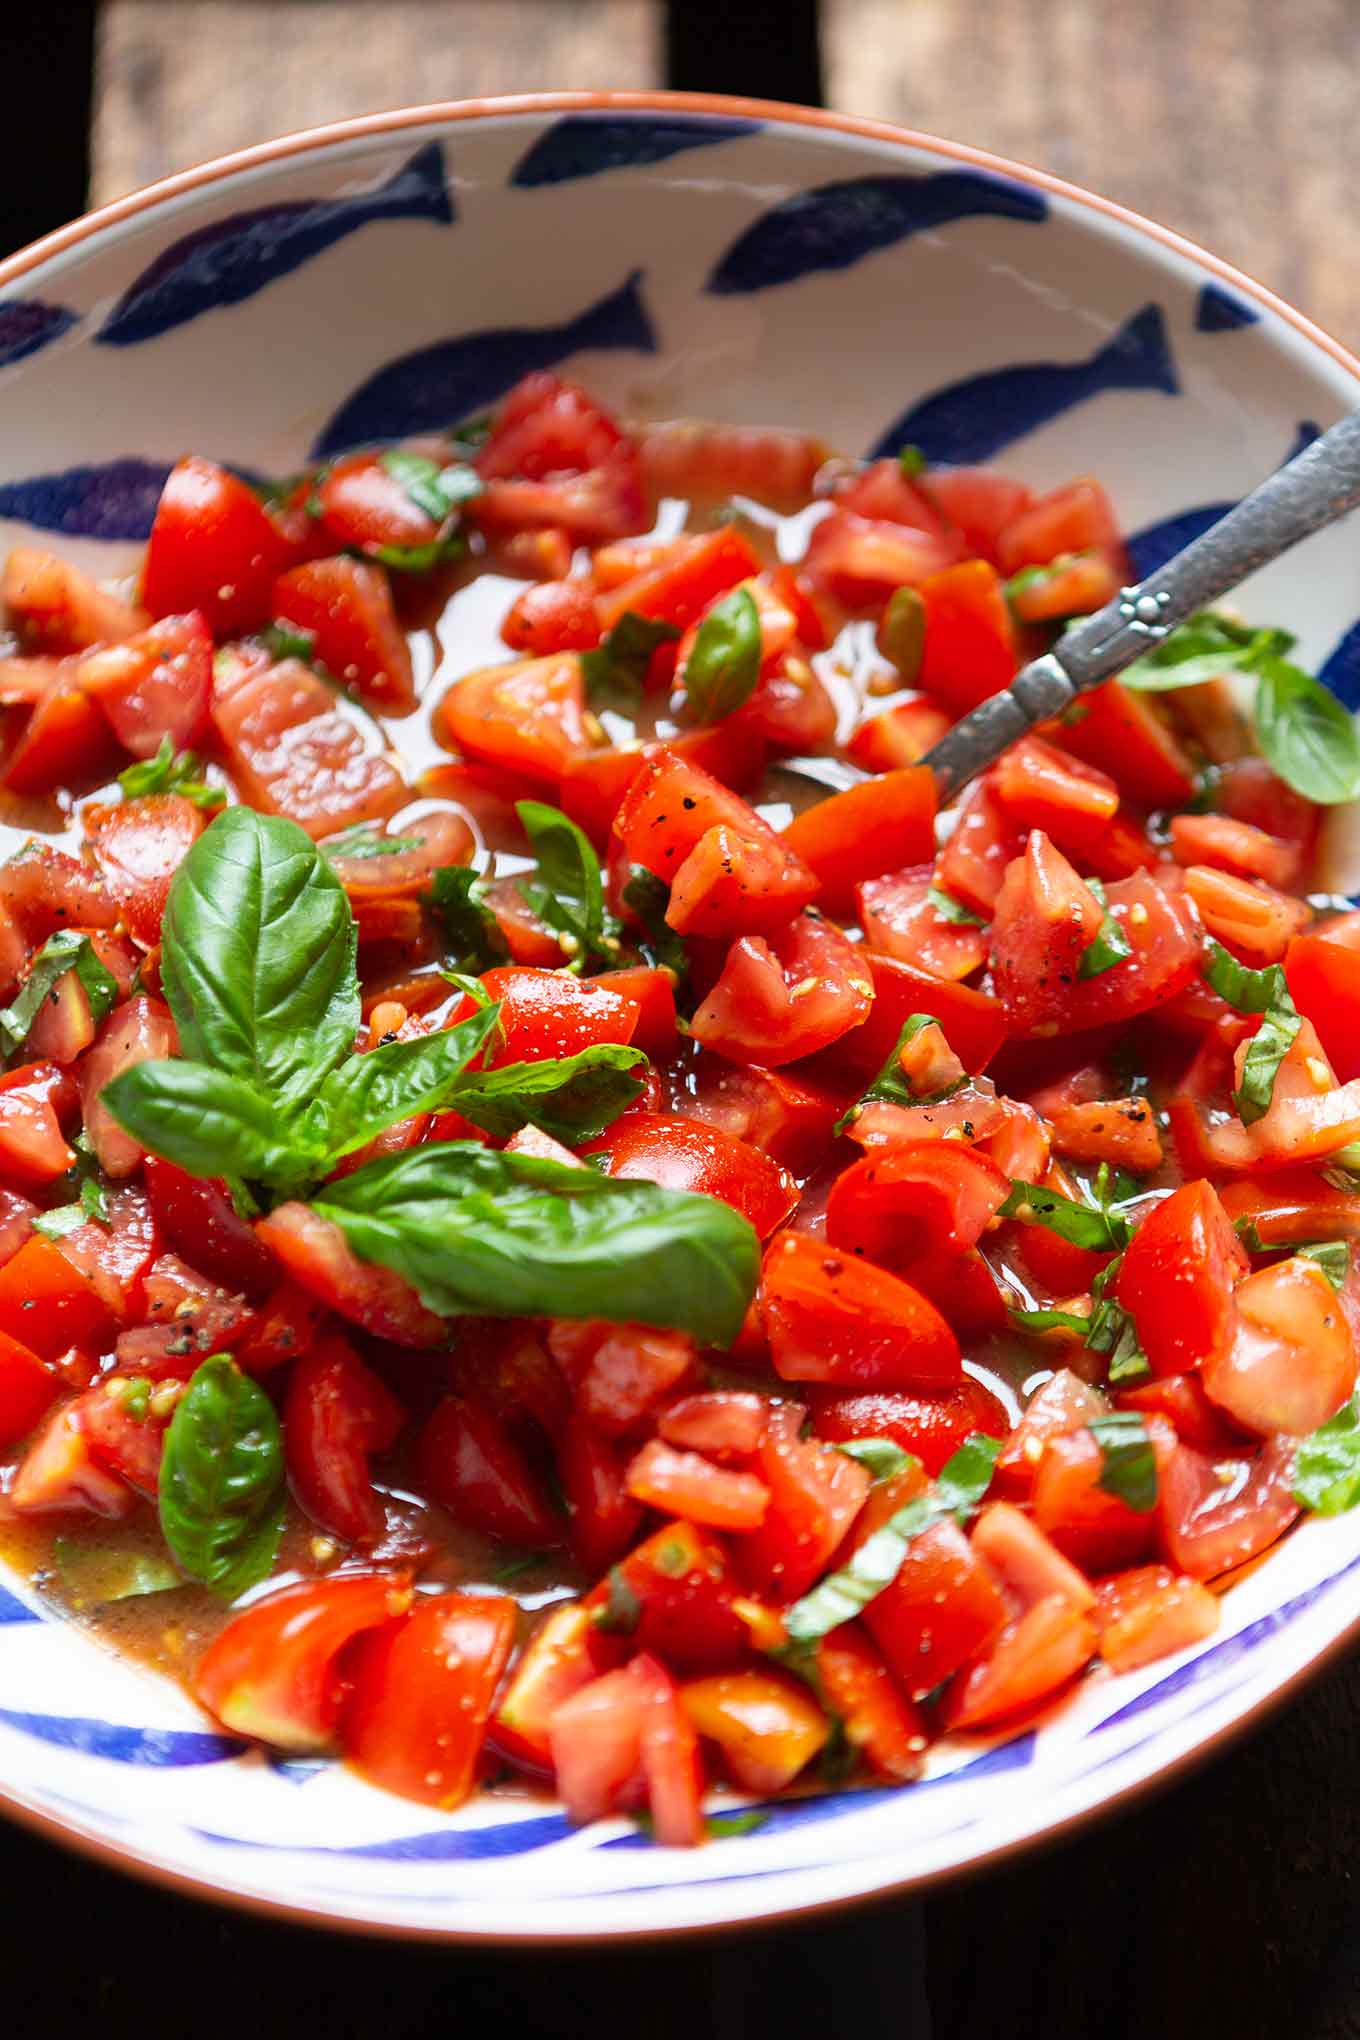 Einfacher Tomatensalat mit Basilikum und 10 weitere Tomatenrezepte warten auf euch - die Tomatensaison ist im vollen Gange und im Kochkarussell findet ihr nun schnelle und leckere Rezeptideen, um eure selbstgeernteten Tomaten lecker zu verarbeiten. Kochkarussell - Foodblog für schnelle und einfache Feierabendküche